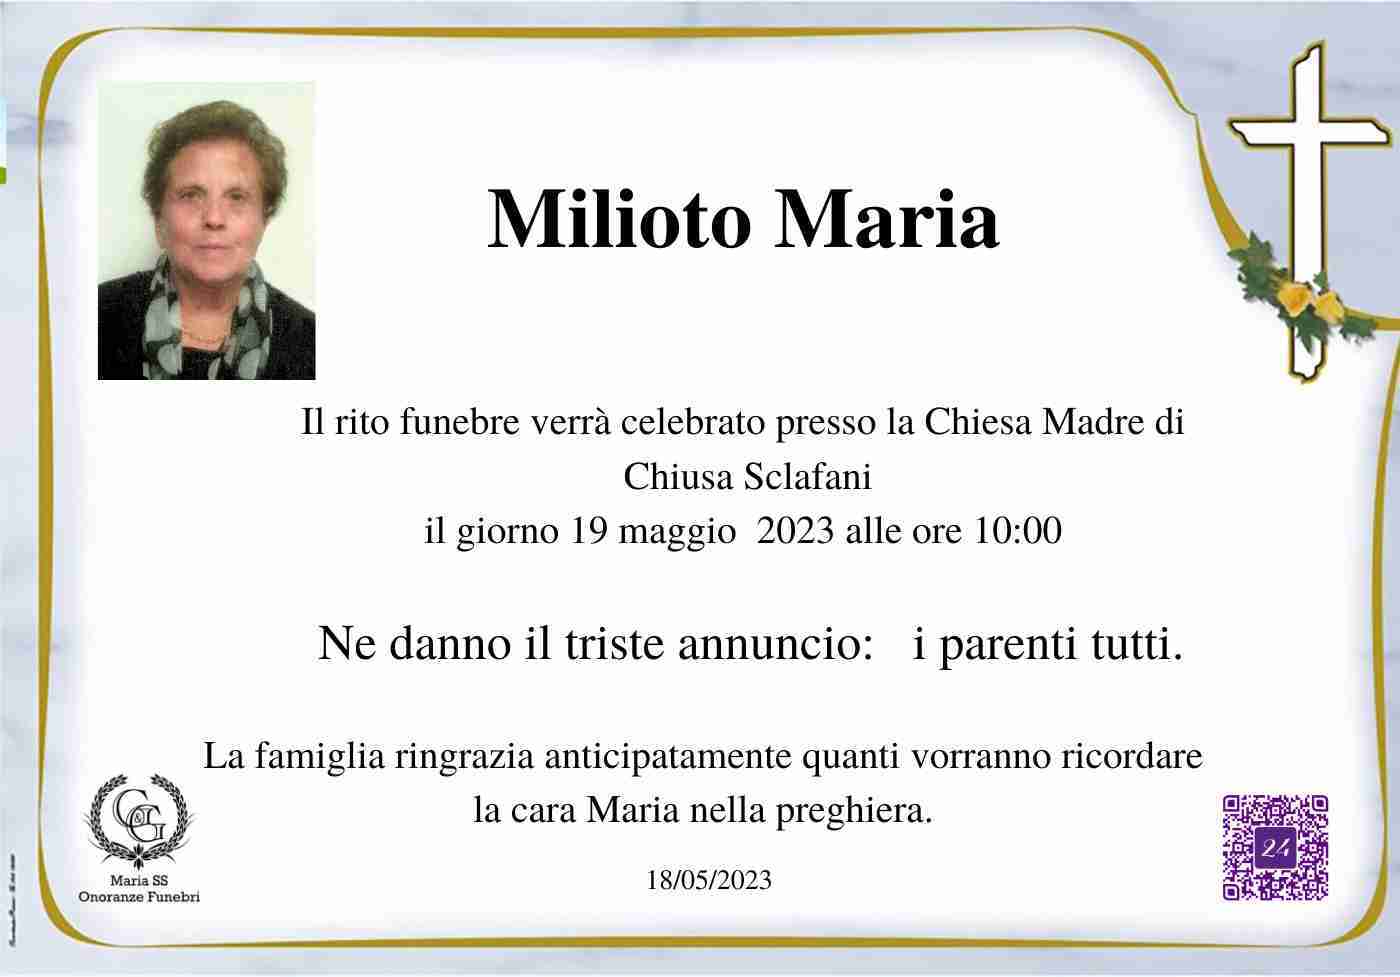 Maria Milioto